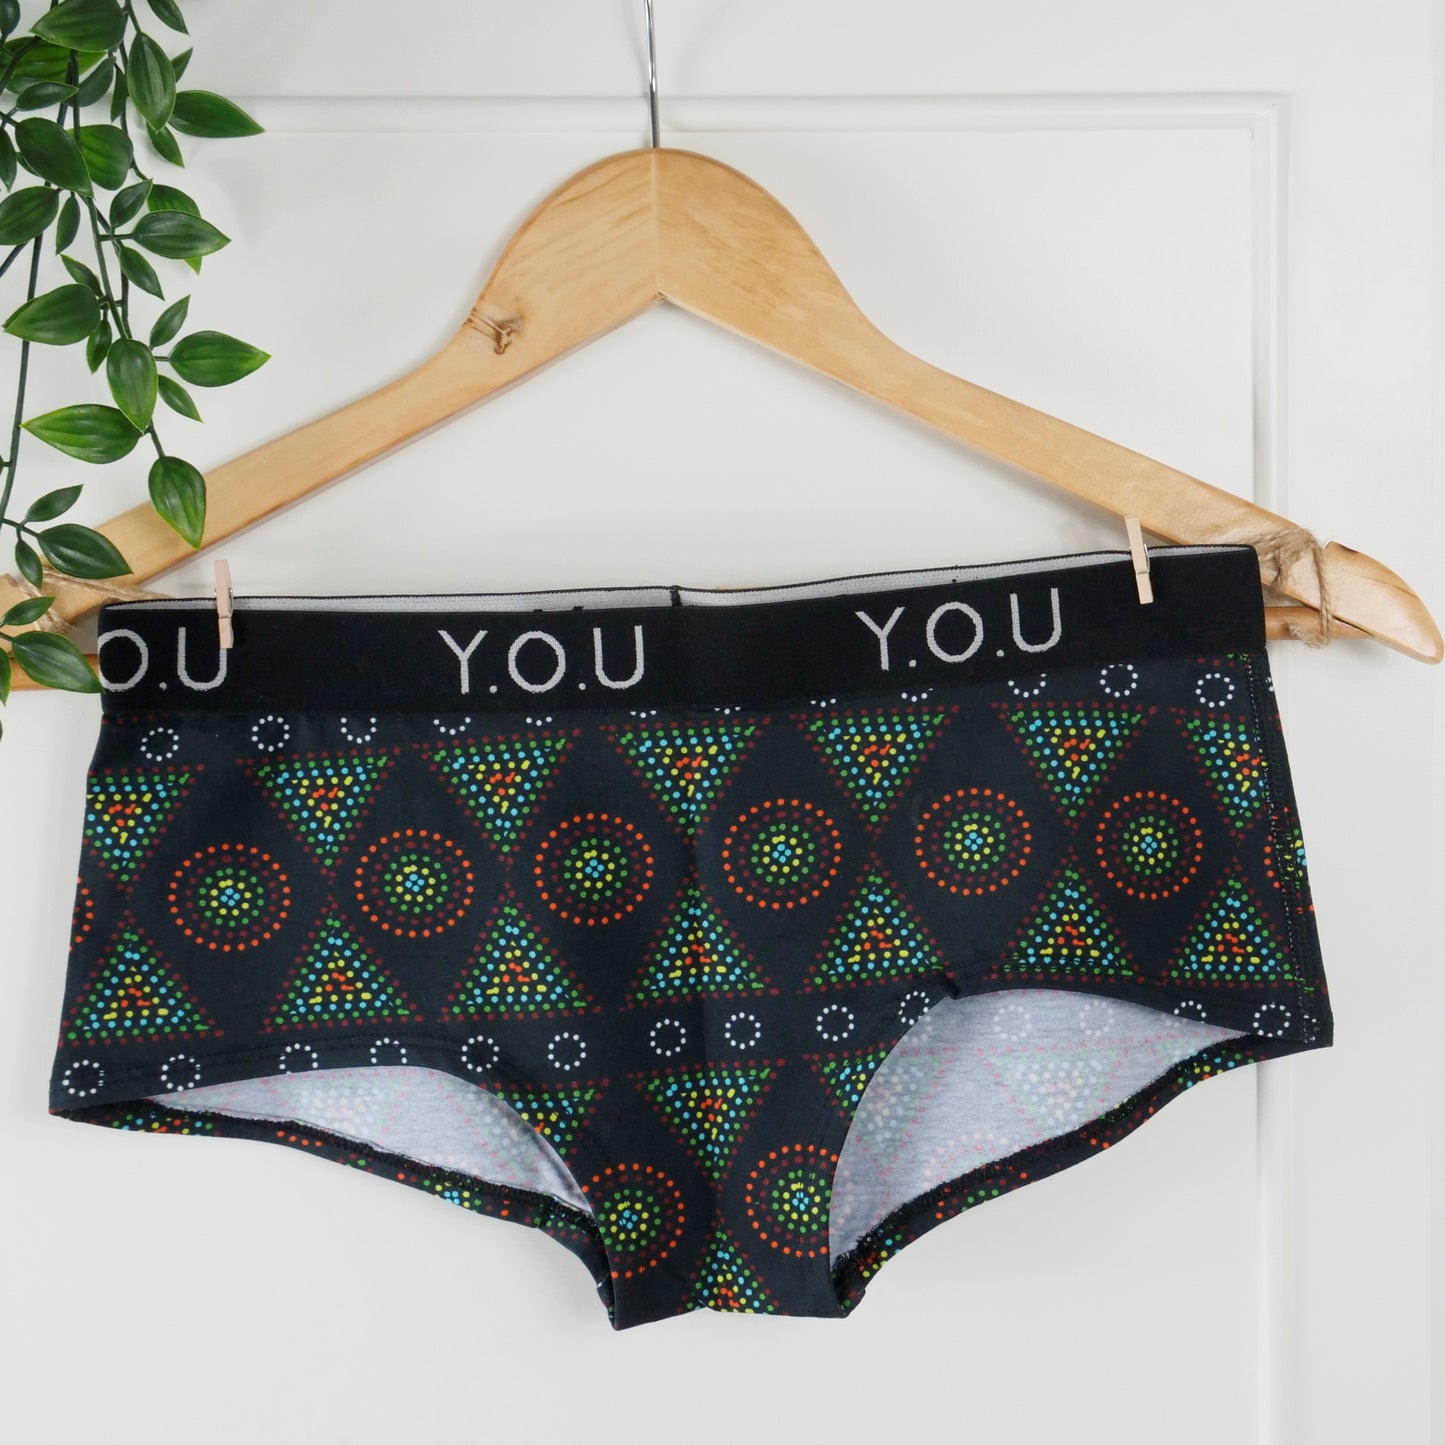 Women’s organic cotton boy shorts with Y.O.U elastic - Black Mara design